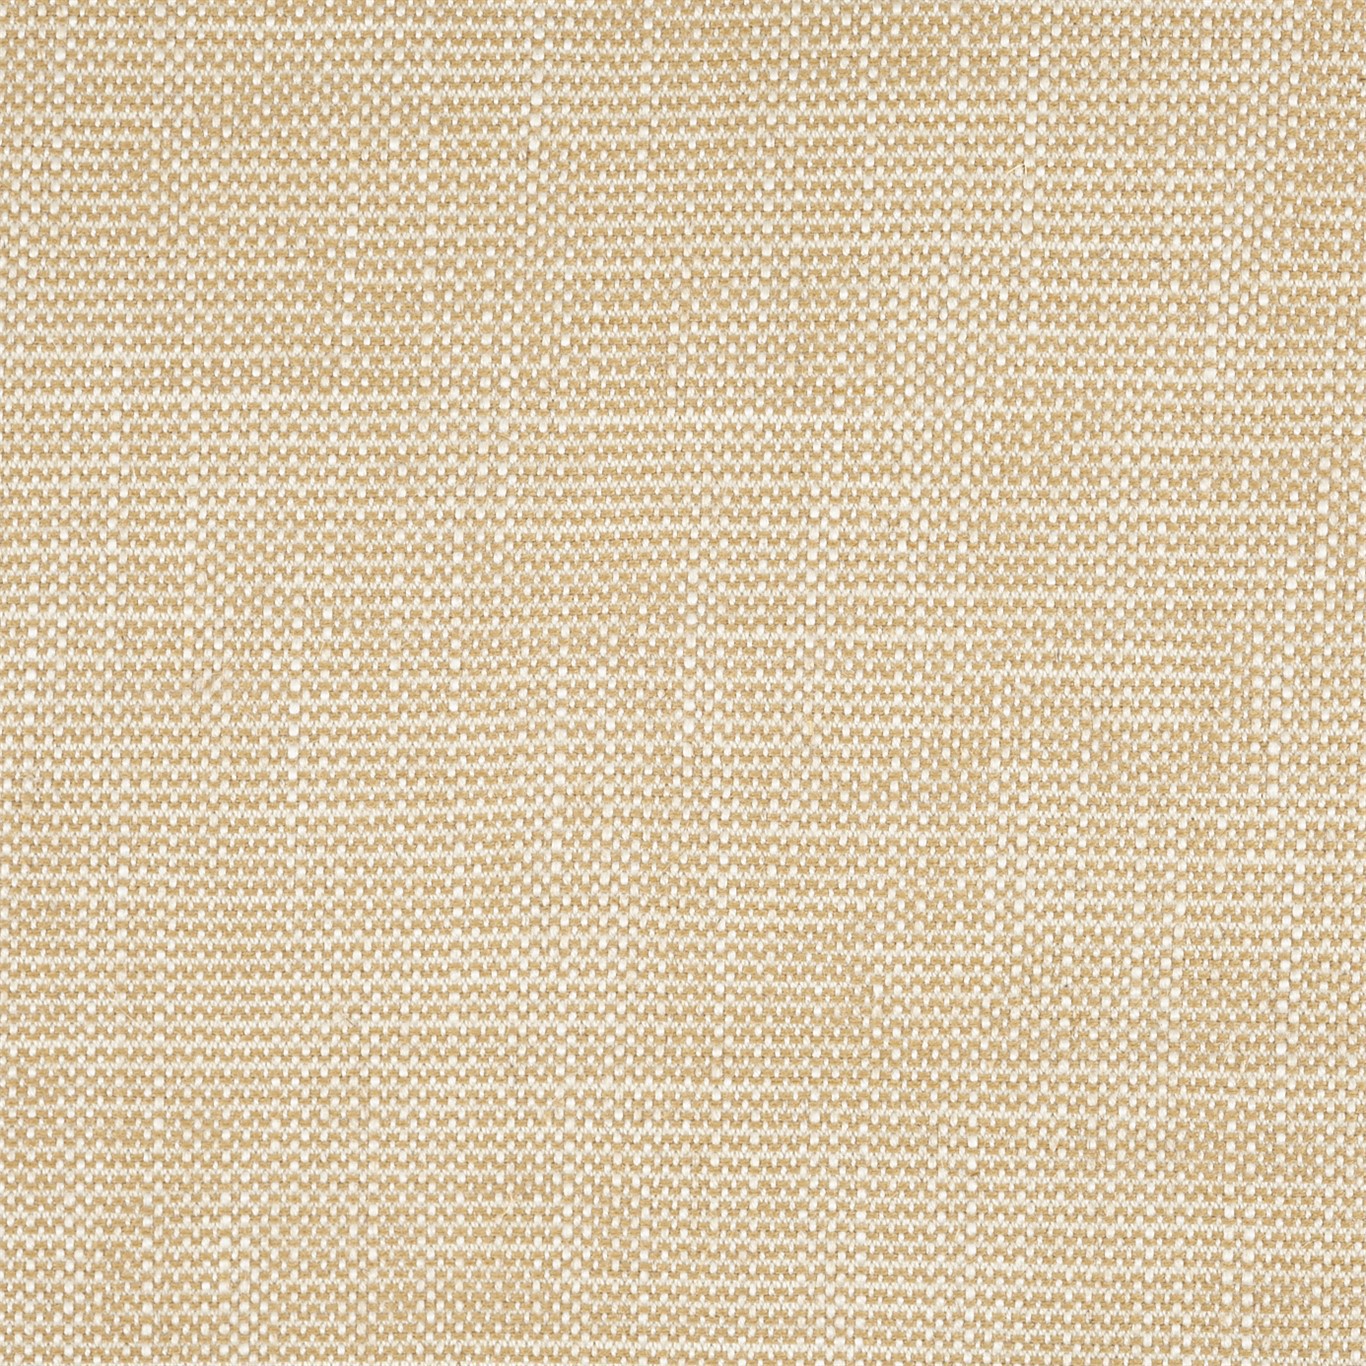 Lowen Barley Fabric by SAN